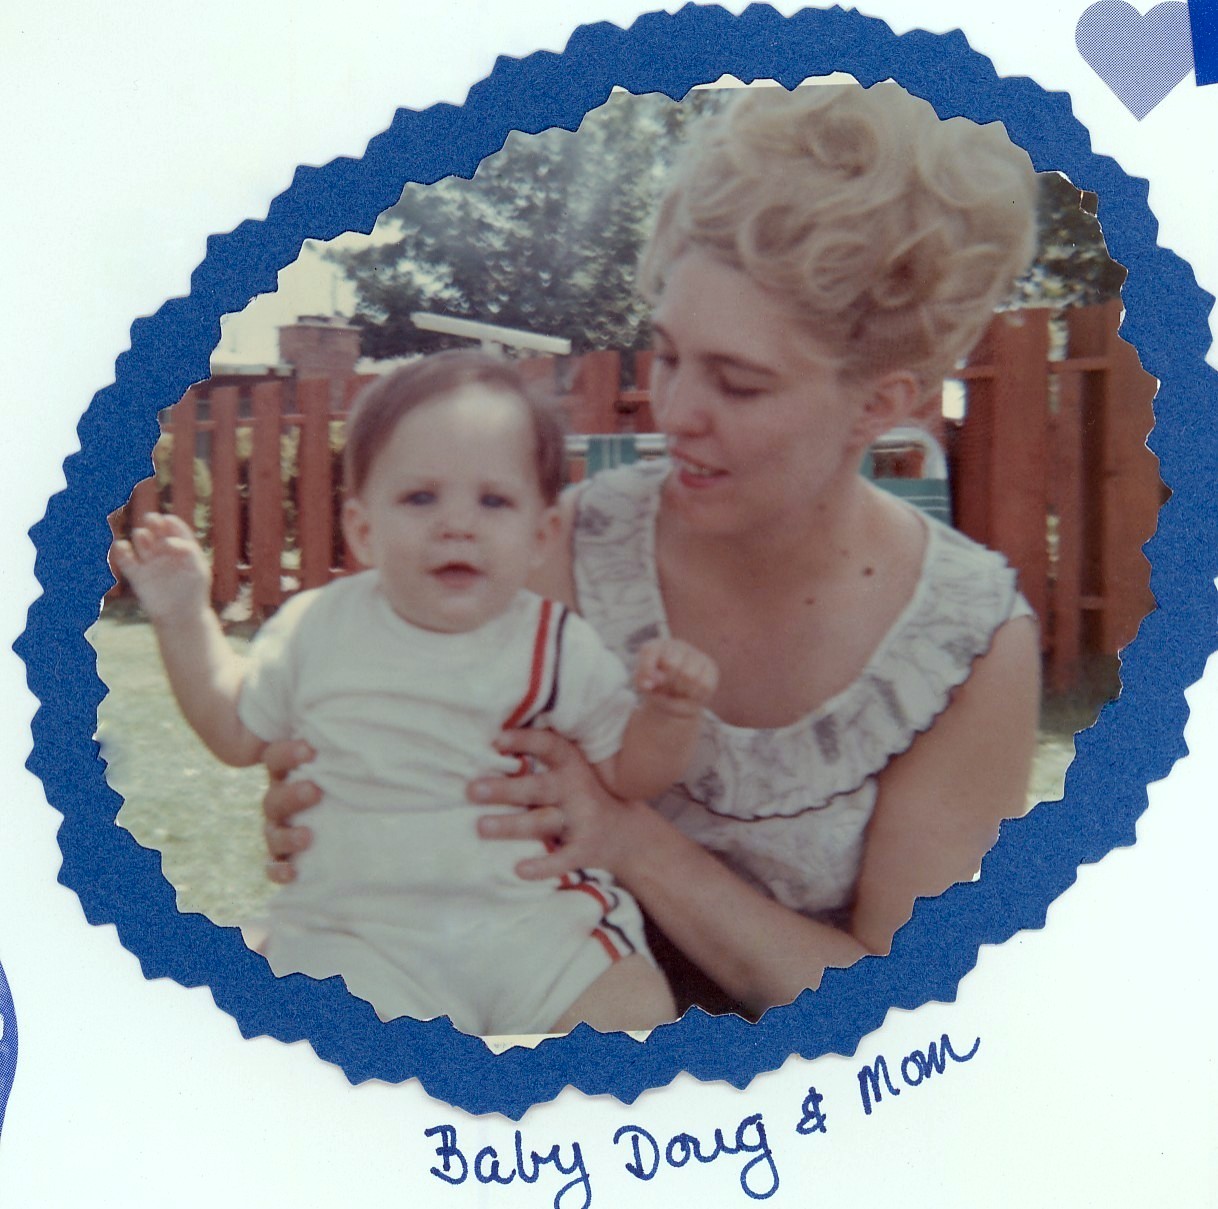 Baby Doug and Mom